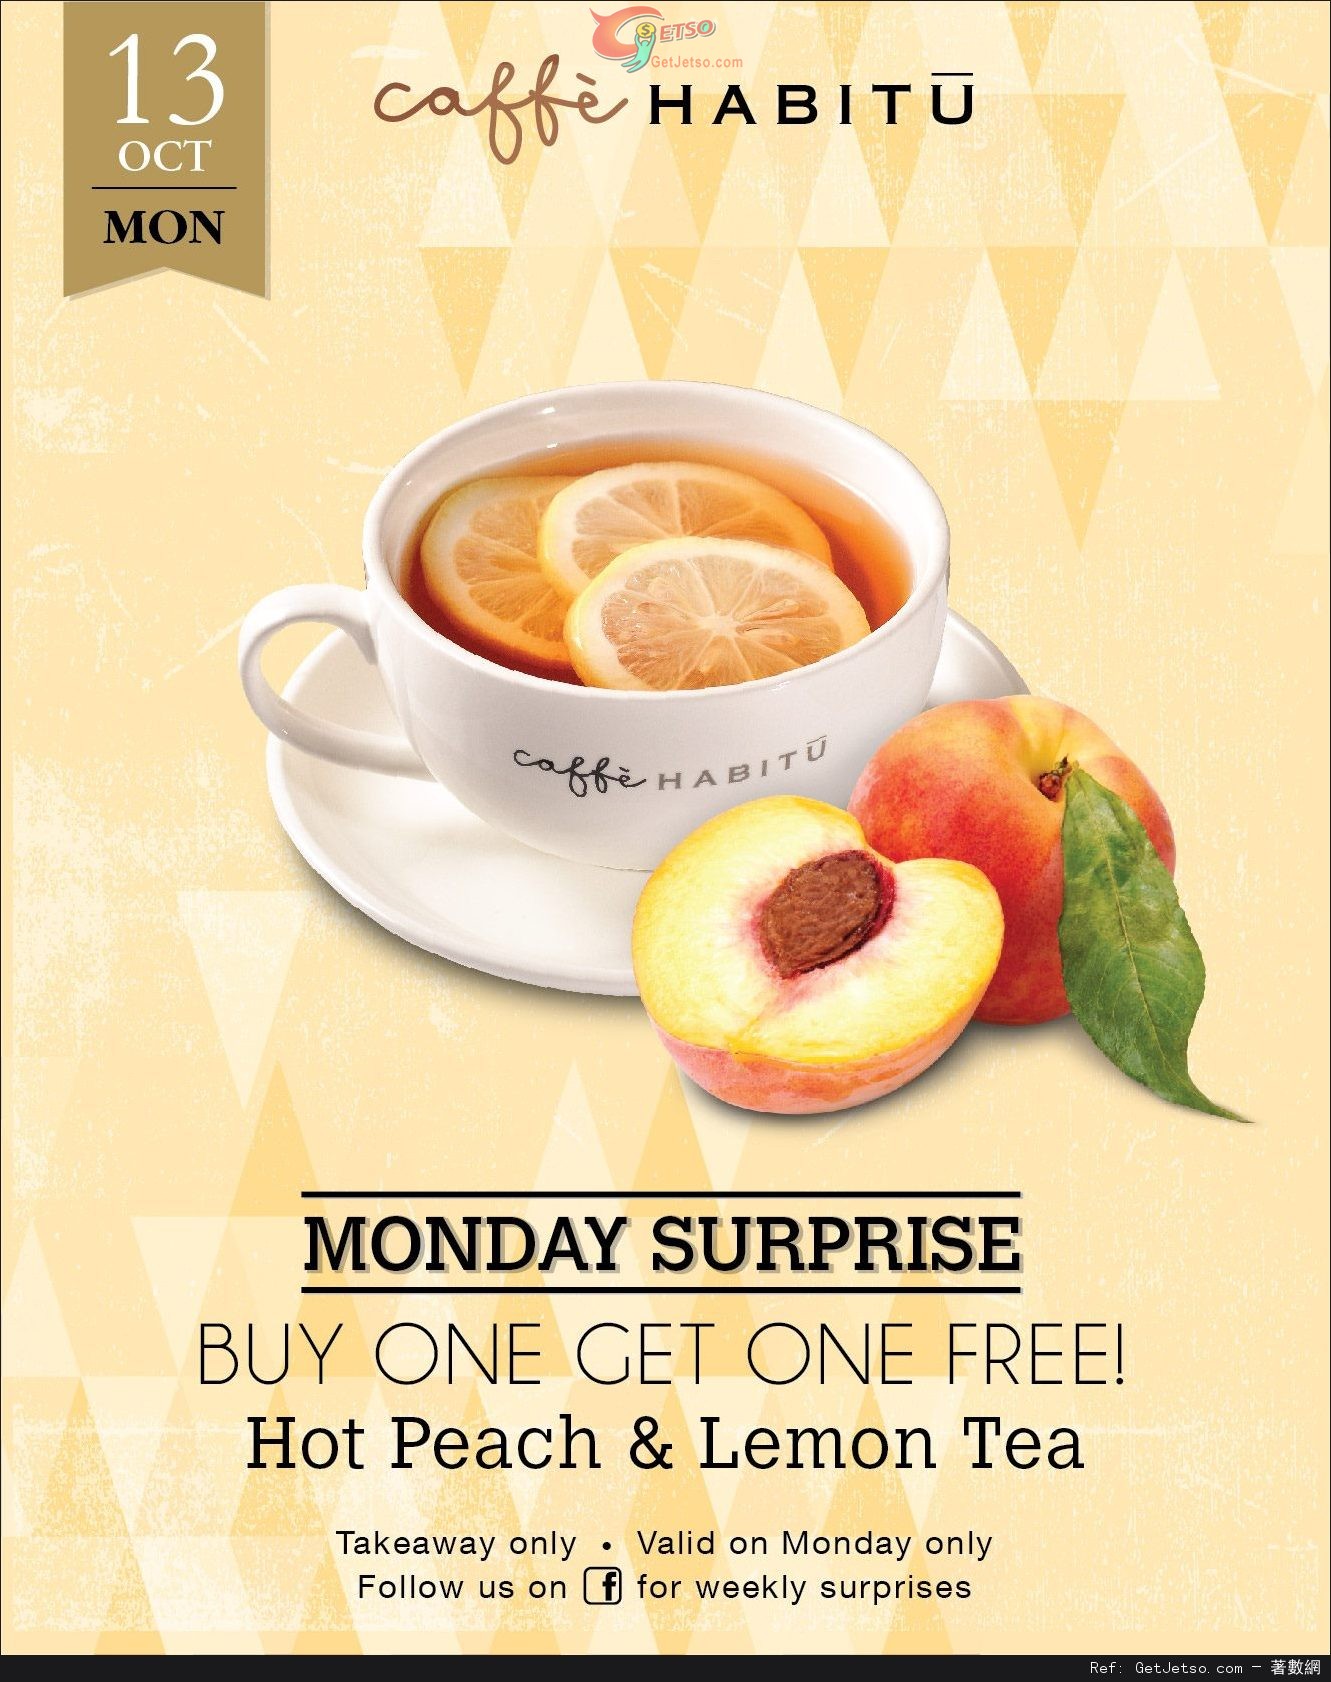 Caffe HABITU Hot Peach &Lemon Tea 買1送1優惠(14年10月13日)圖片1